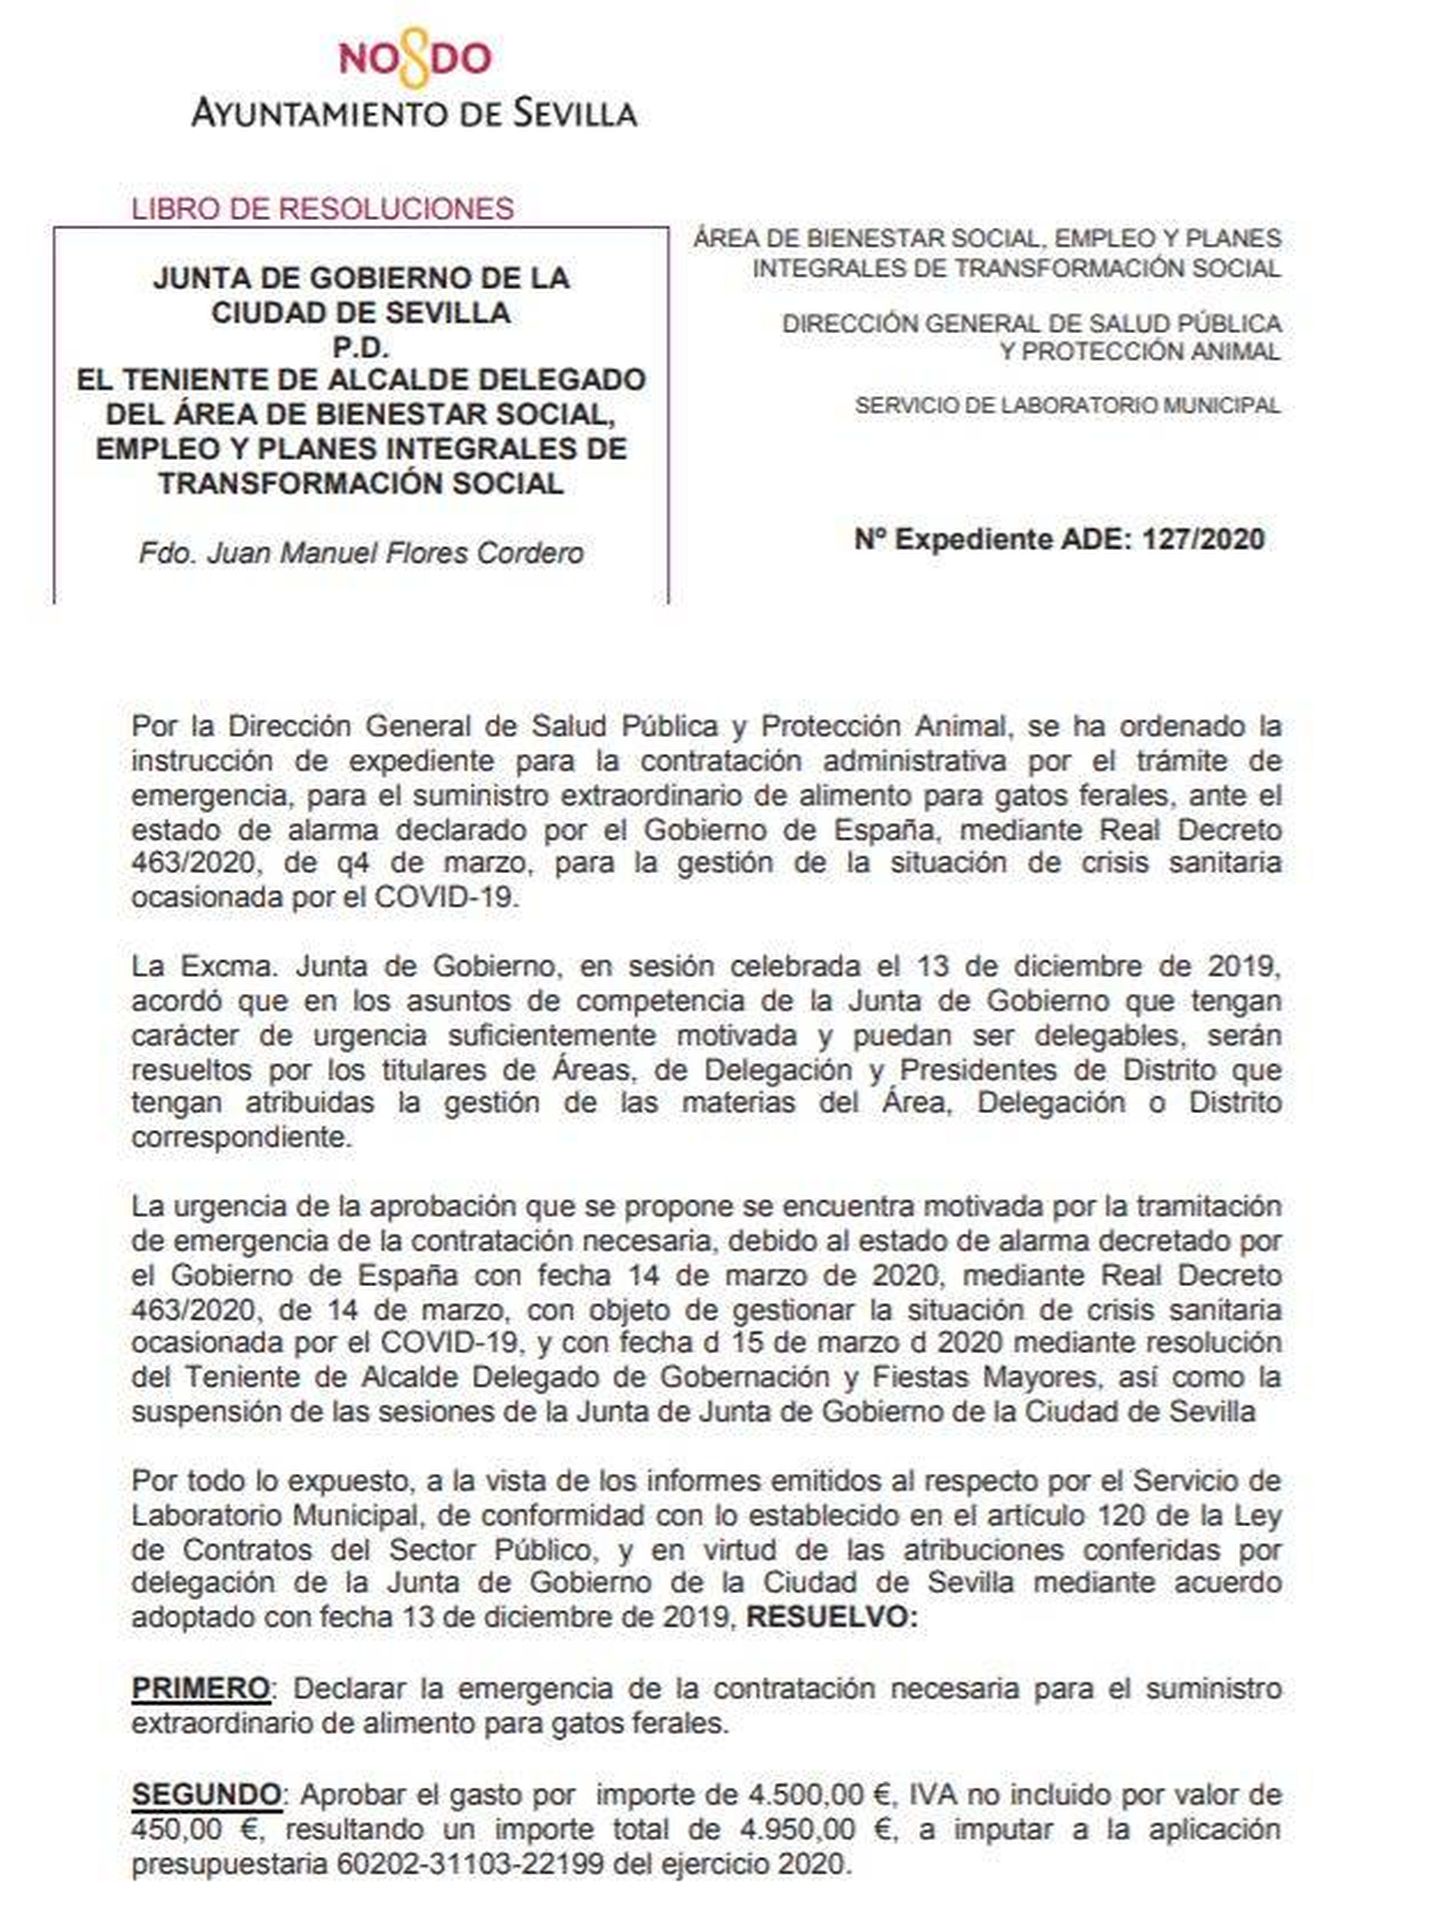 Resolución del Ayuntamiento de Sevilla para alimentar gatos callejeros. (Pinche para ampliar)